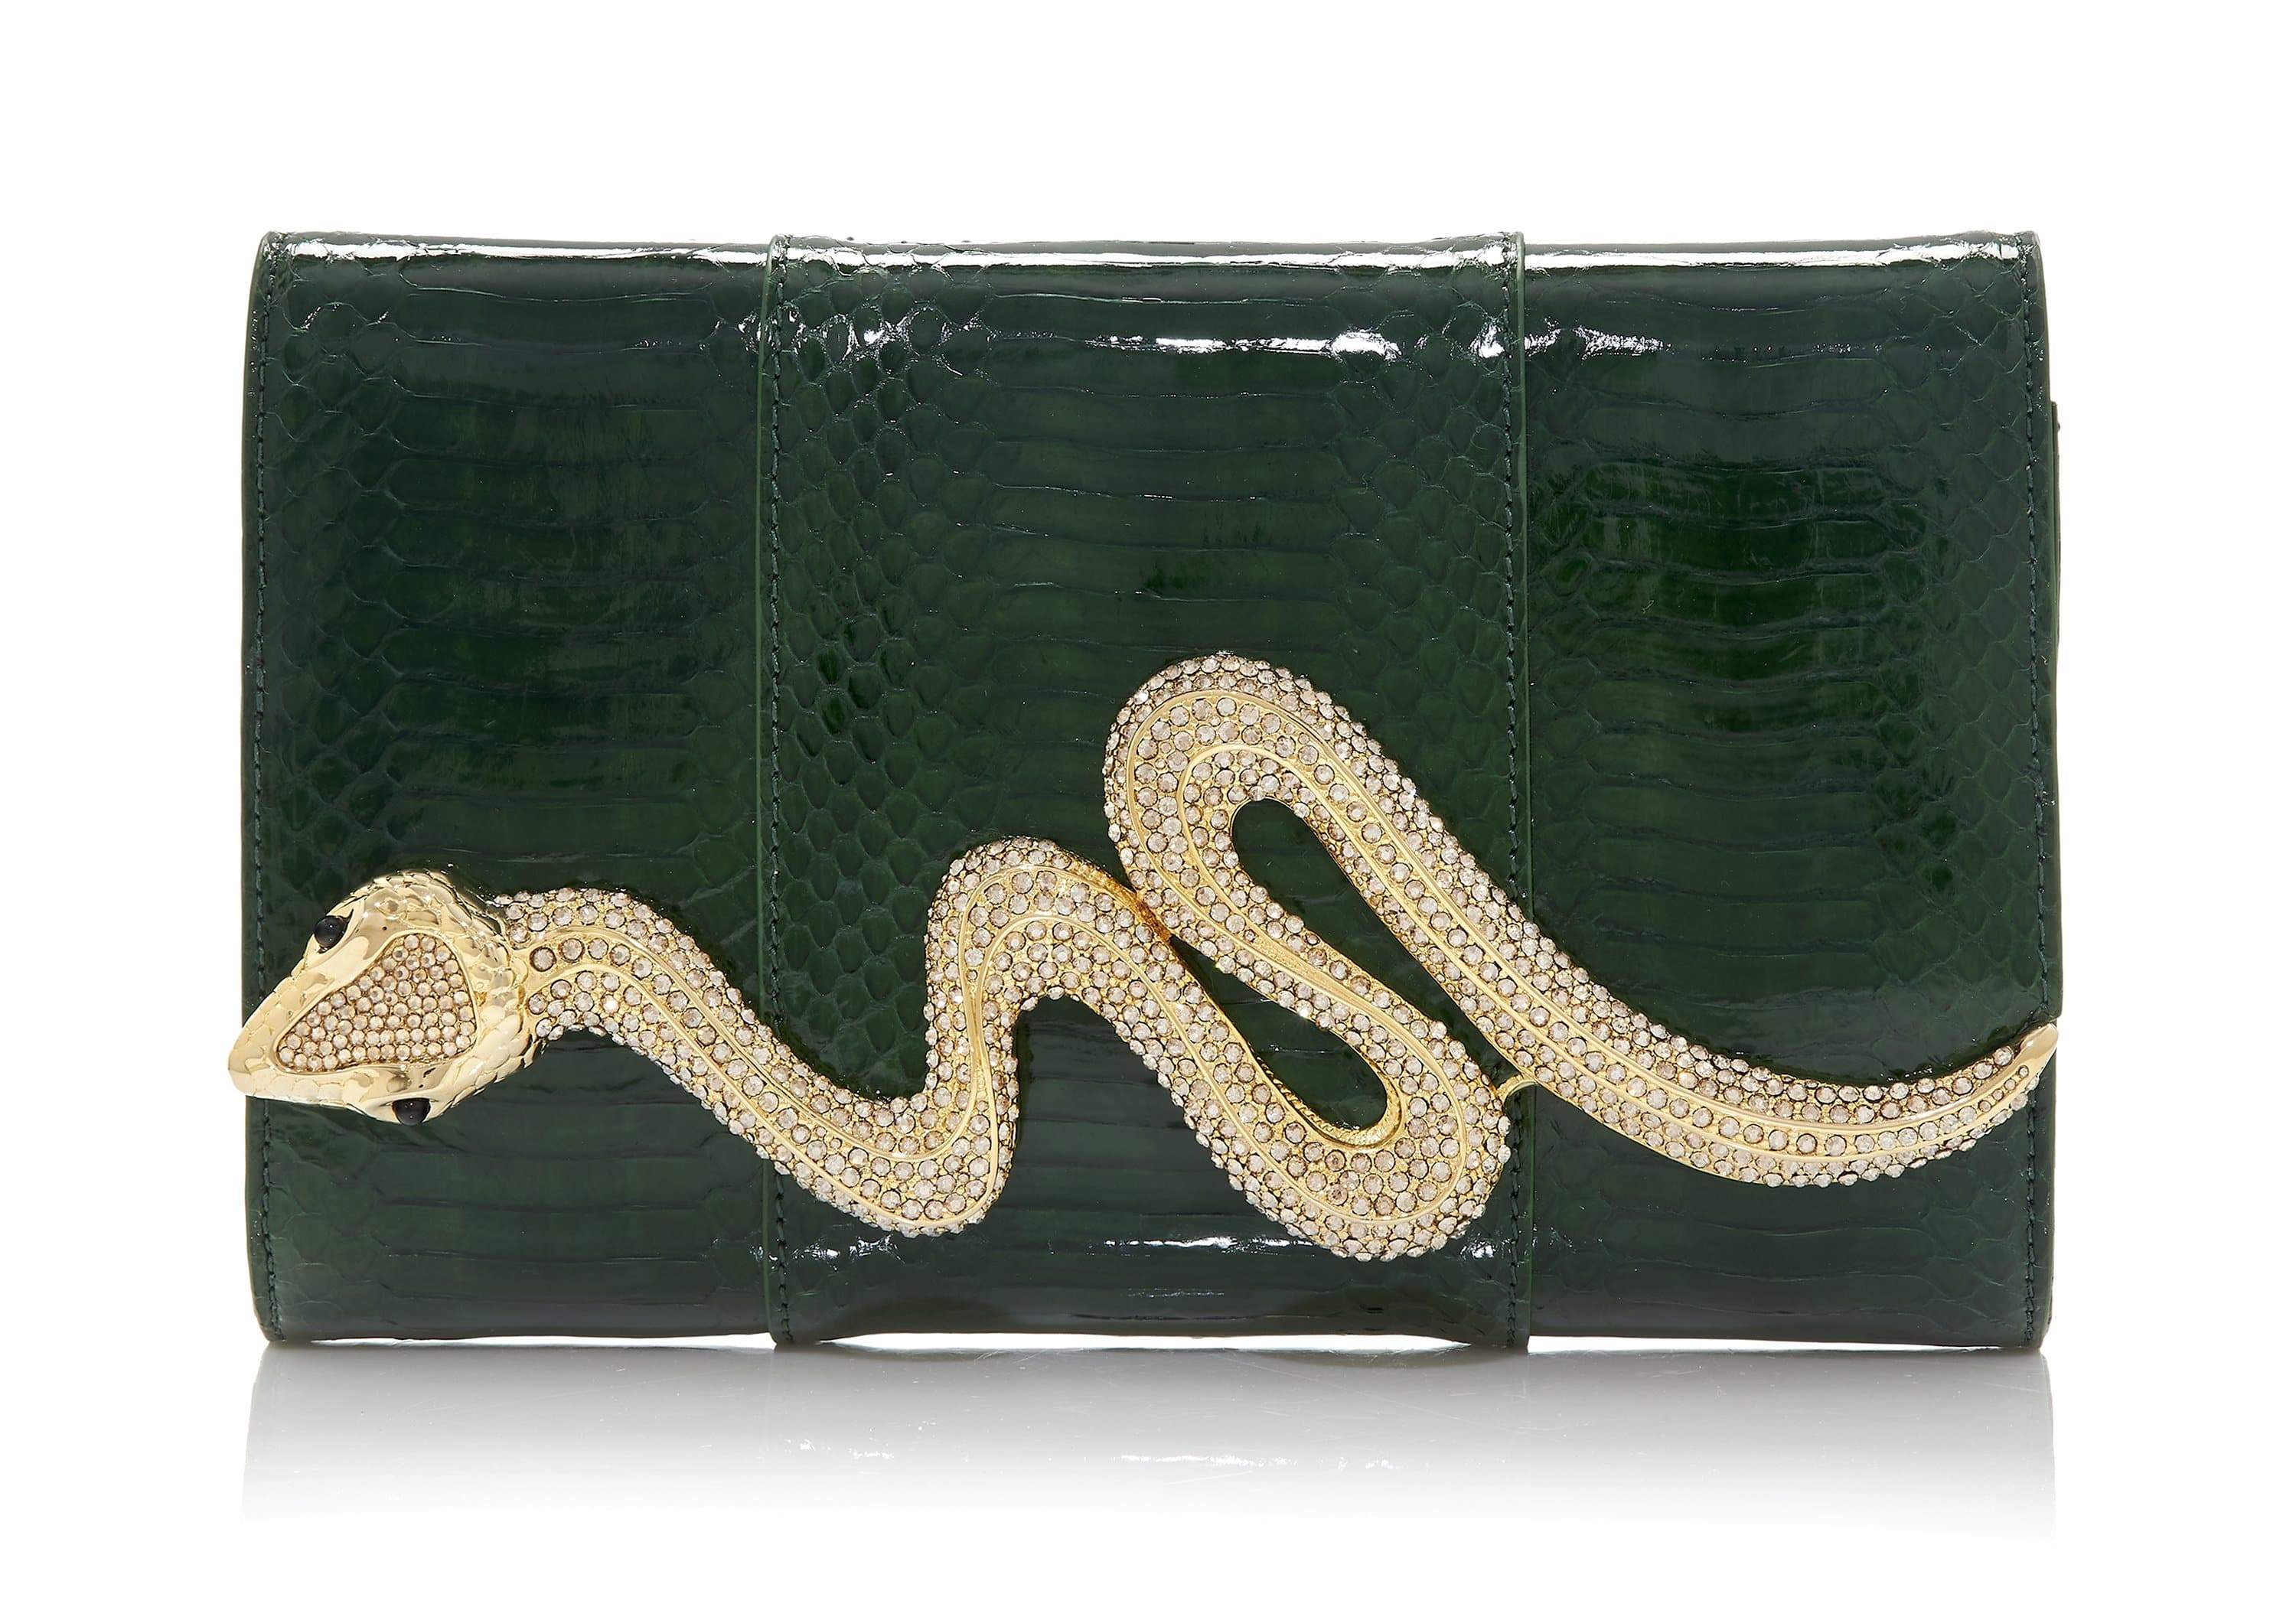 Judith Leiber Couture Women's Serpent Snakeskin Clutch